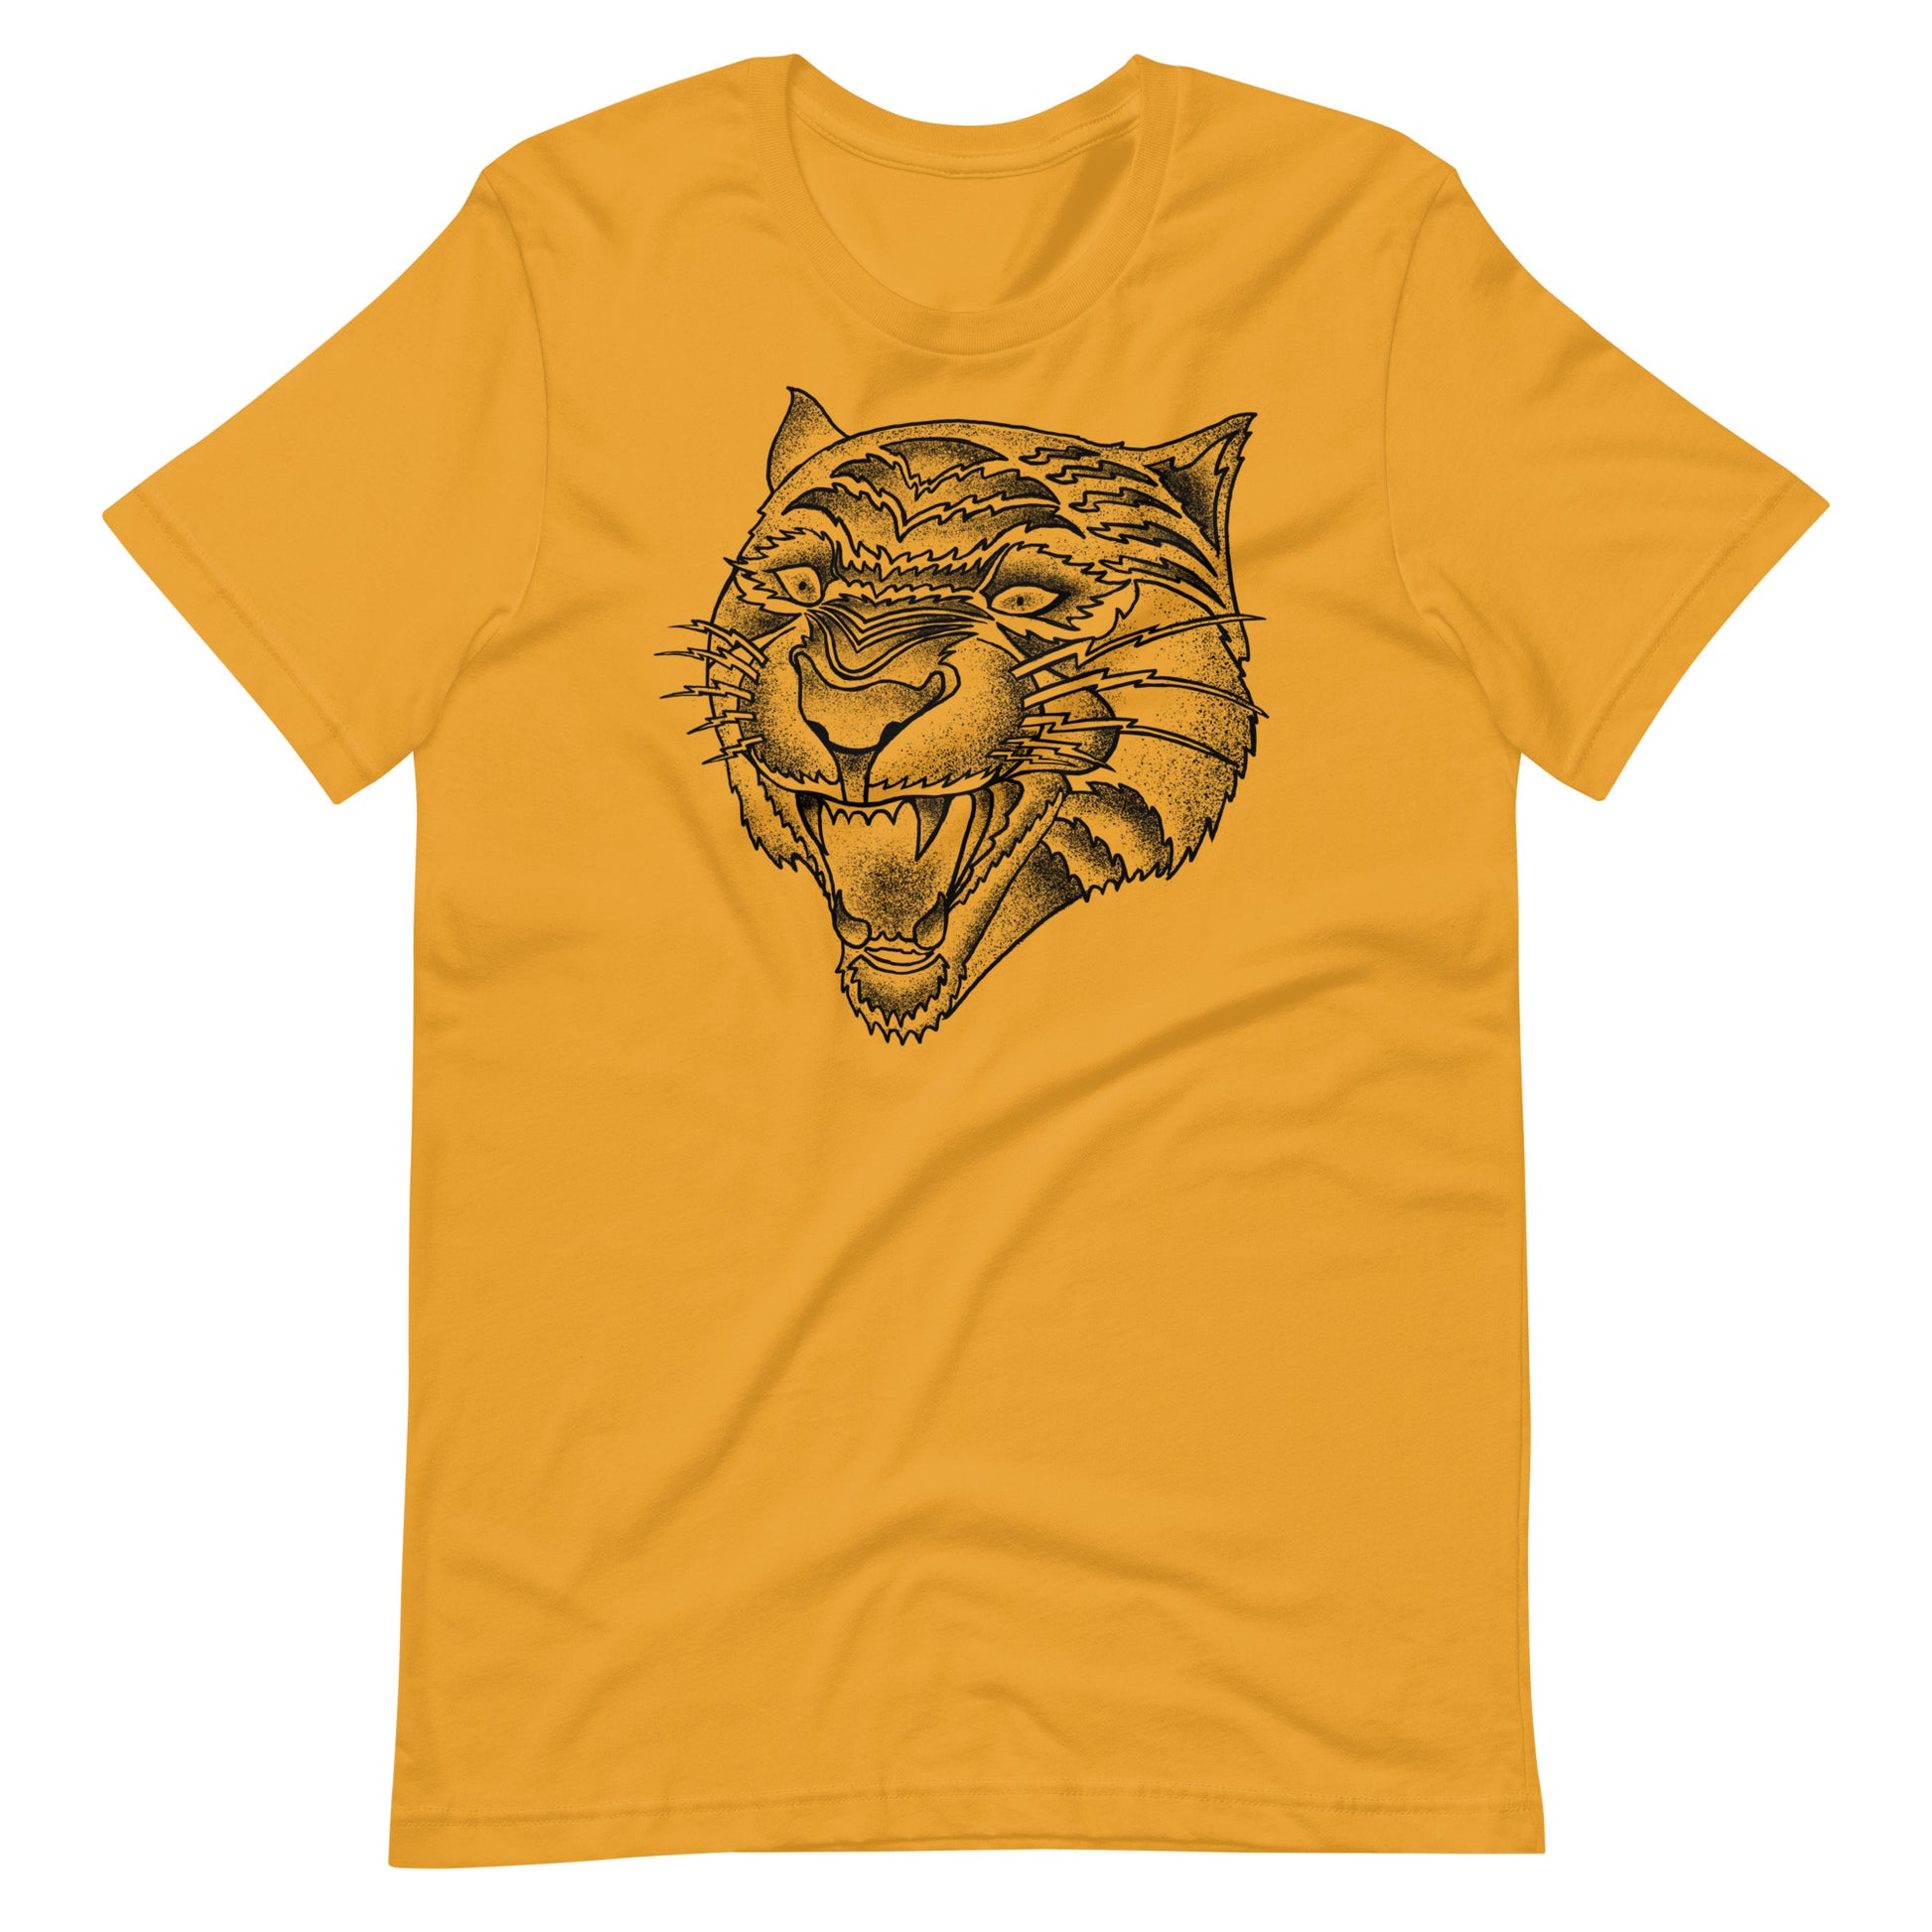 Panther Black - Men's t-shirt - Mustard Front